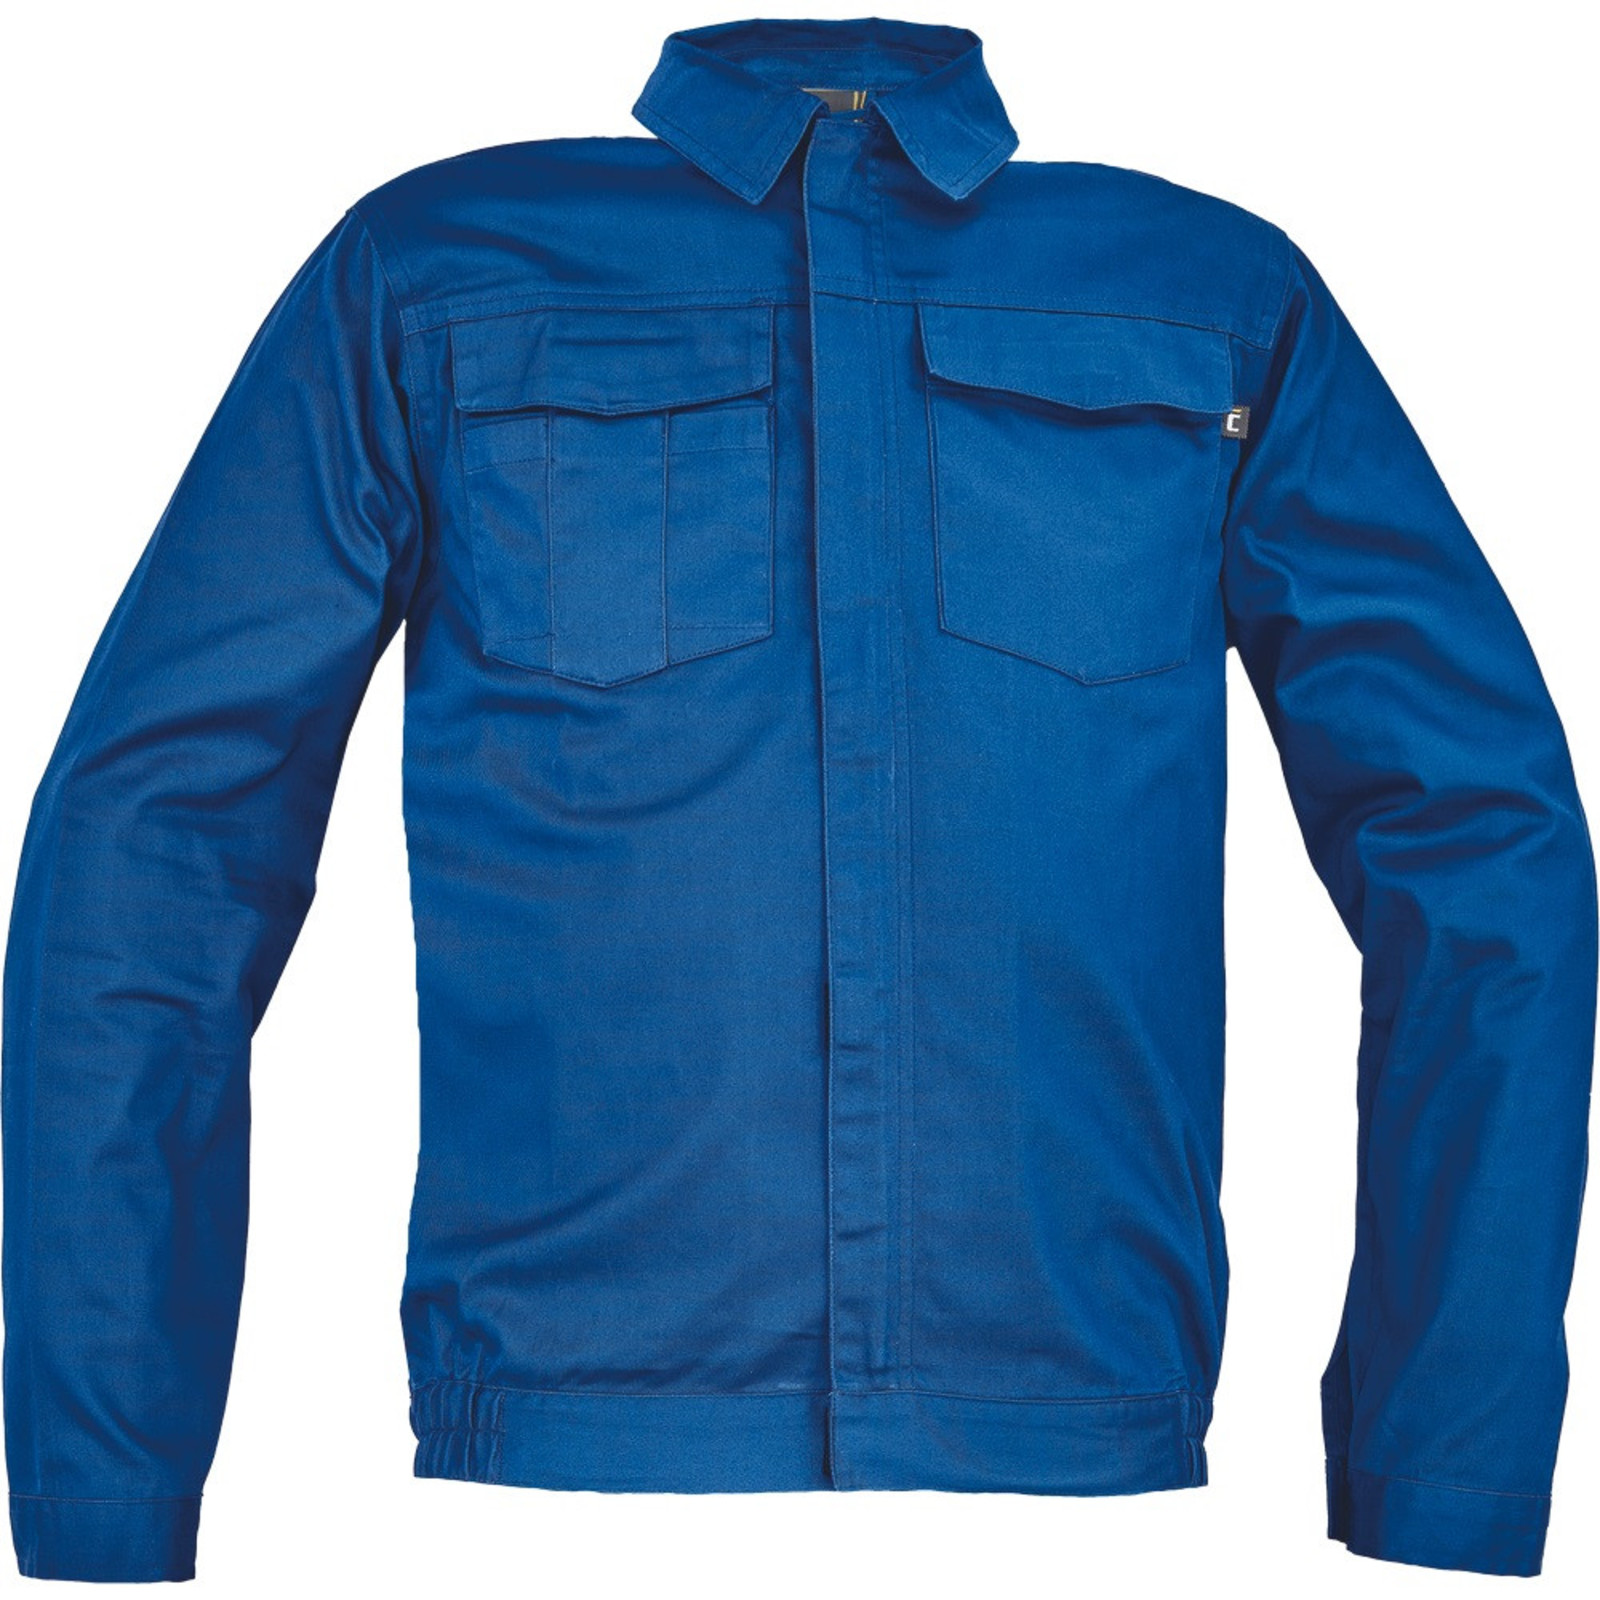 Pánska ľahká pracovná bunda Cerva Ciudades Basic Zaragoza - veľkosť: 46, farba: royal blue